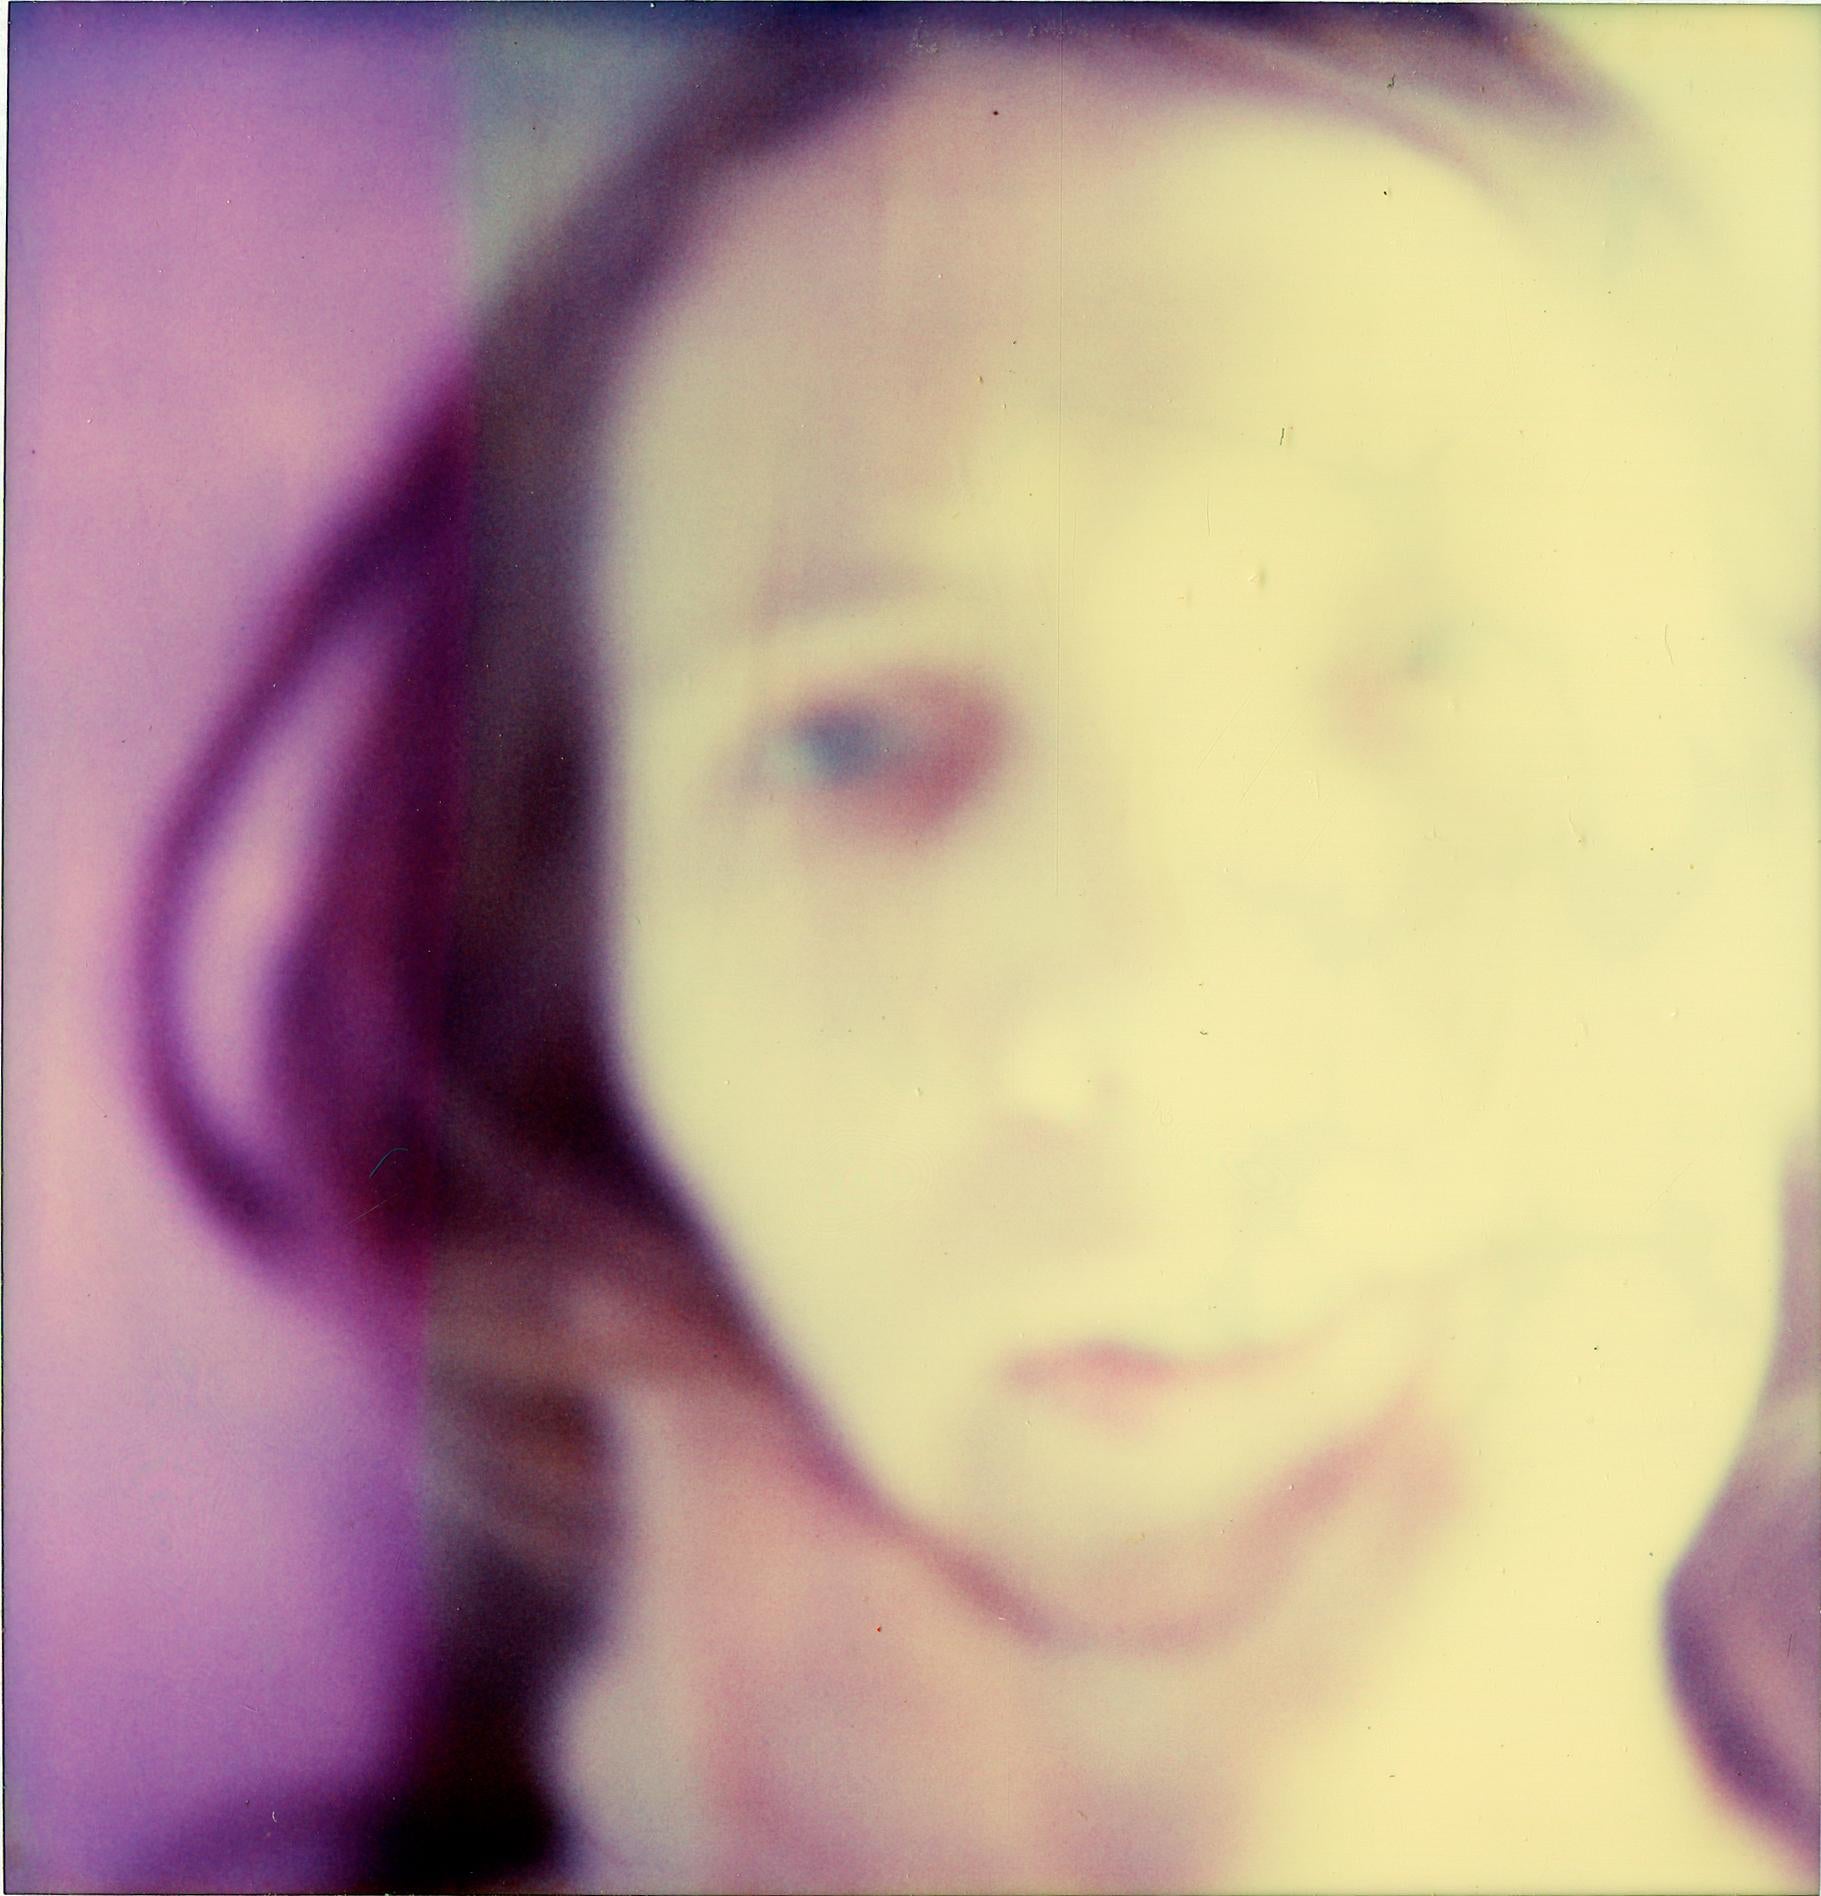 Stefanie Schneider Portrait Photograph - Save me (Sidewinder) - Polaroid, Contemporary, 21st Century, Self-Portrait